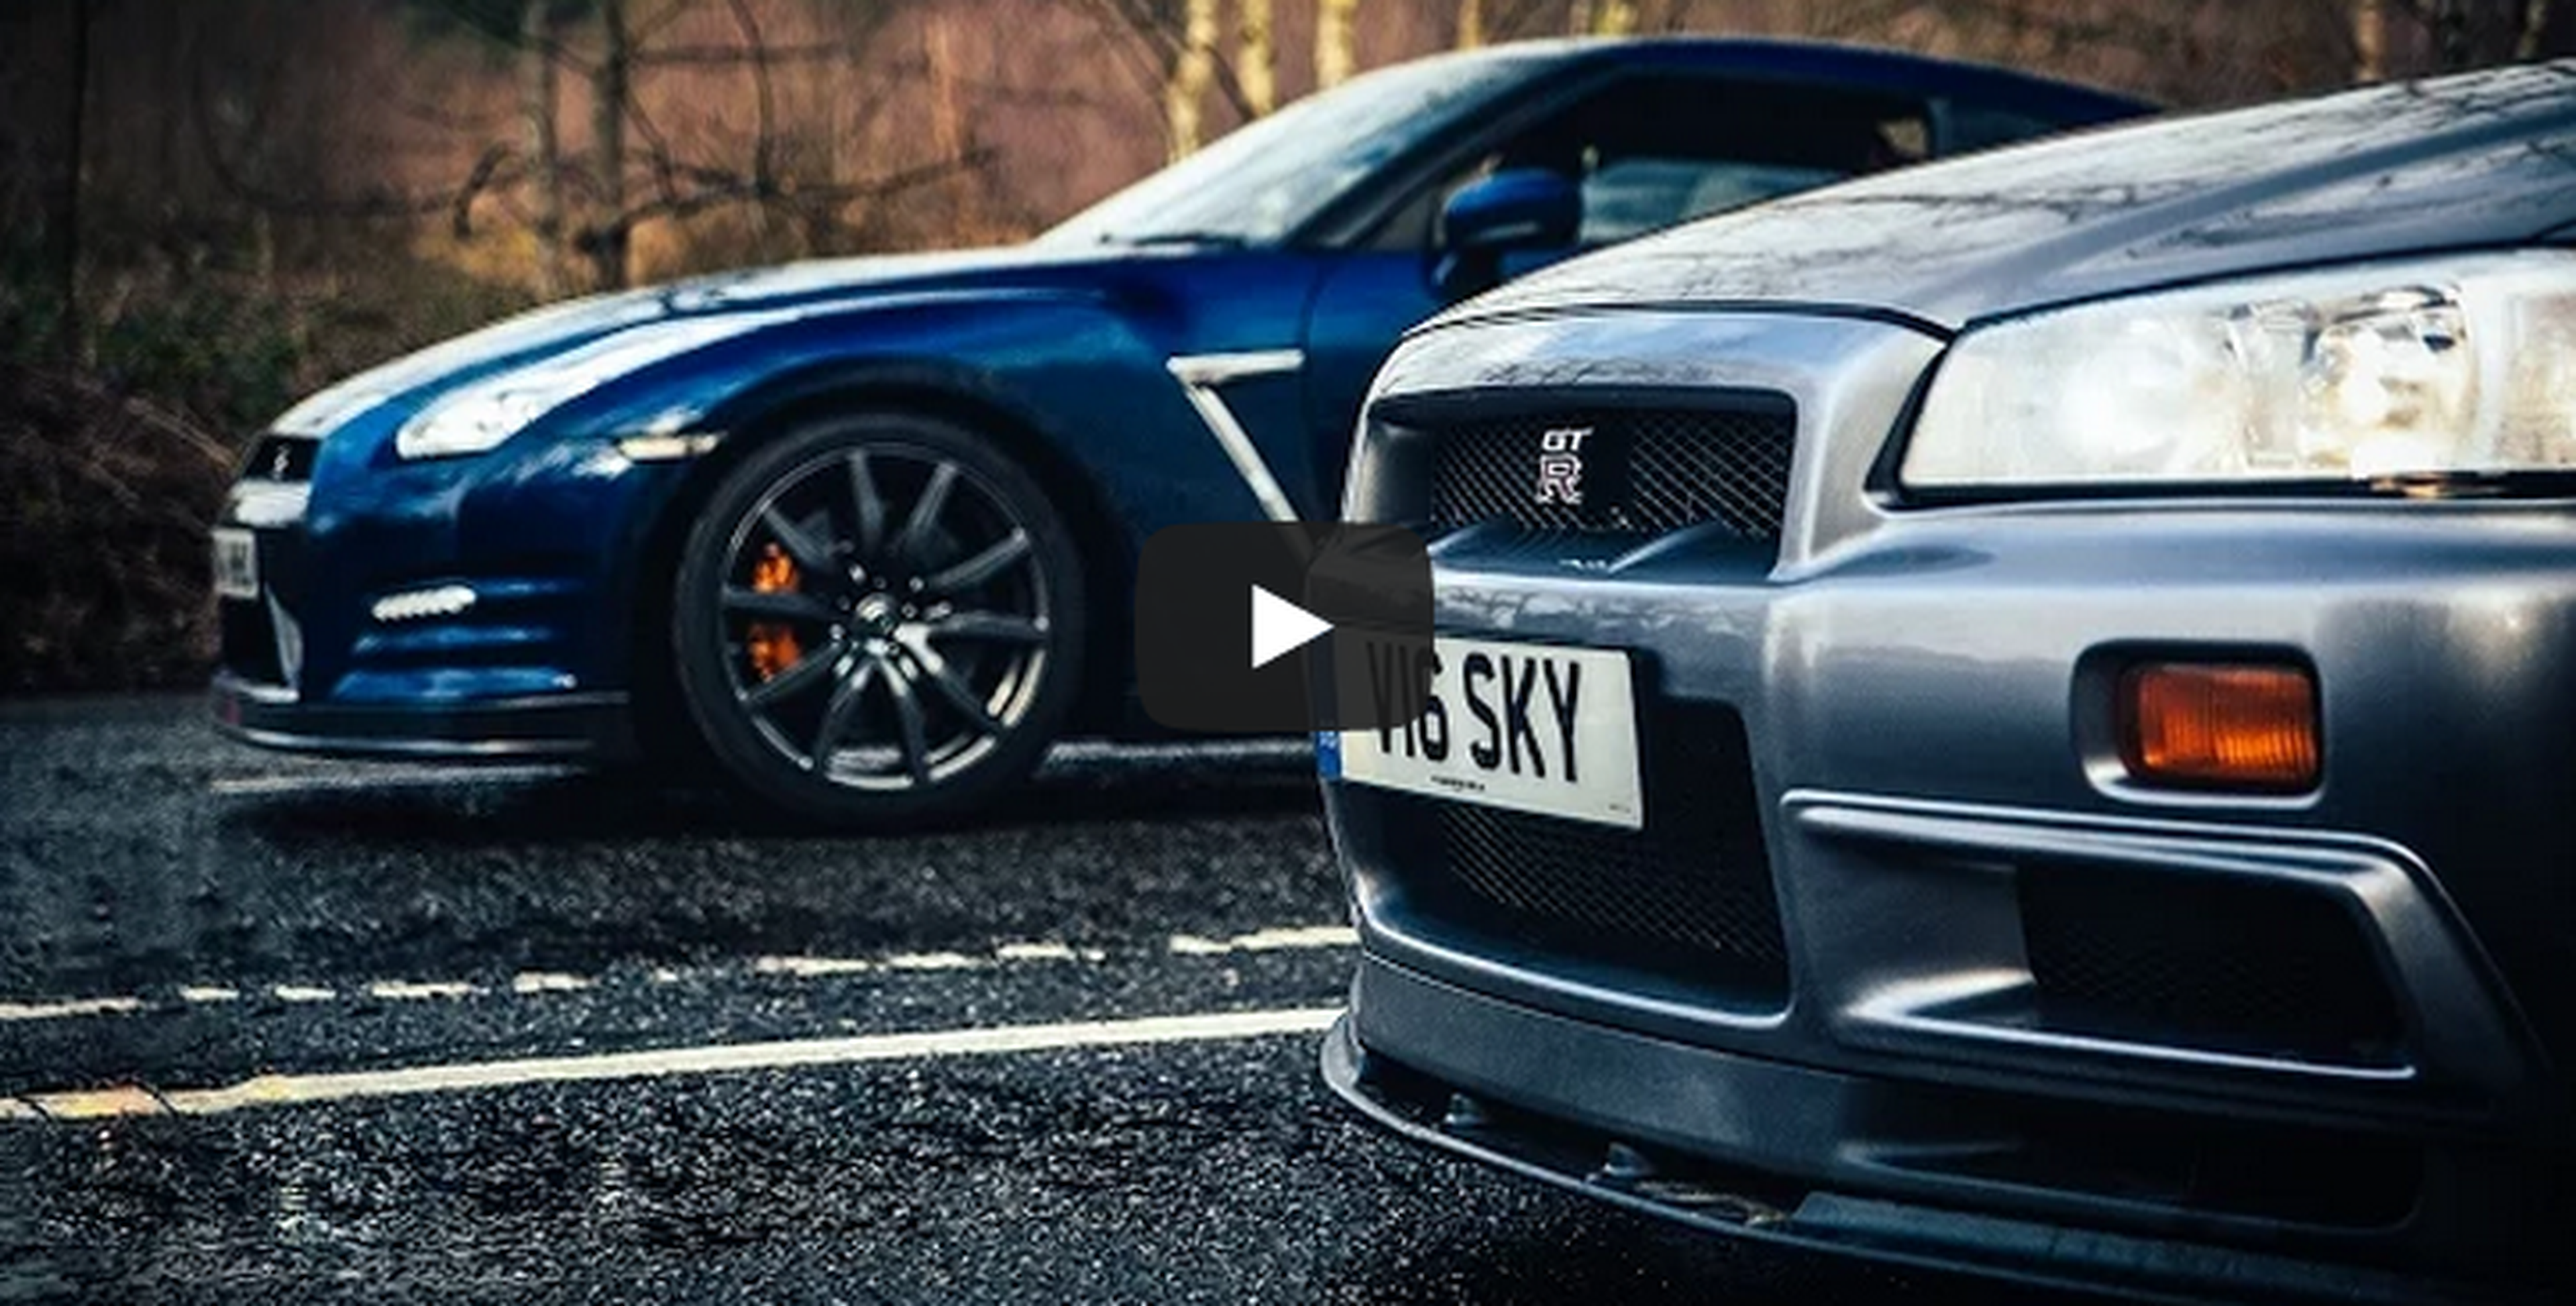 Vídeo: dos generaciones del Nissan GT-R, cara a cara